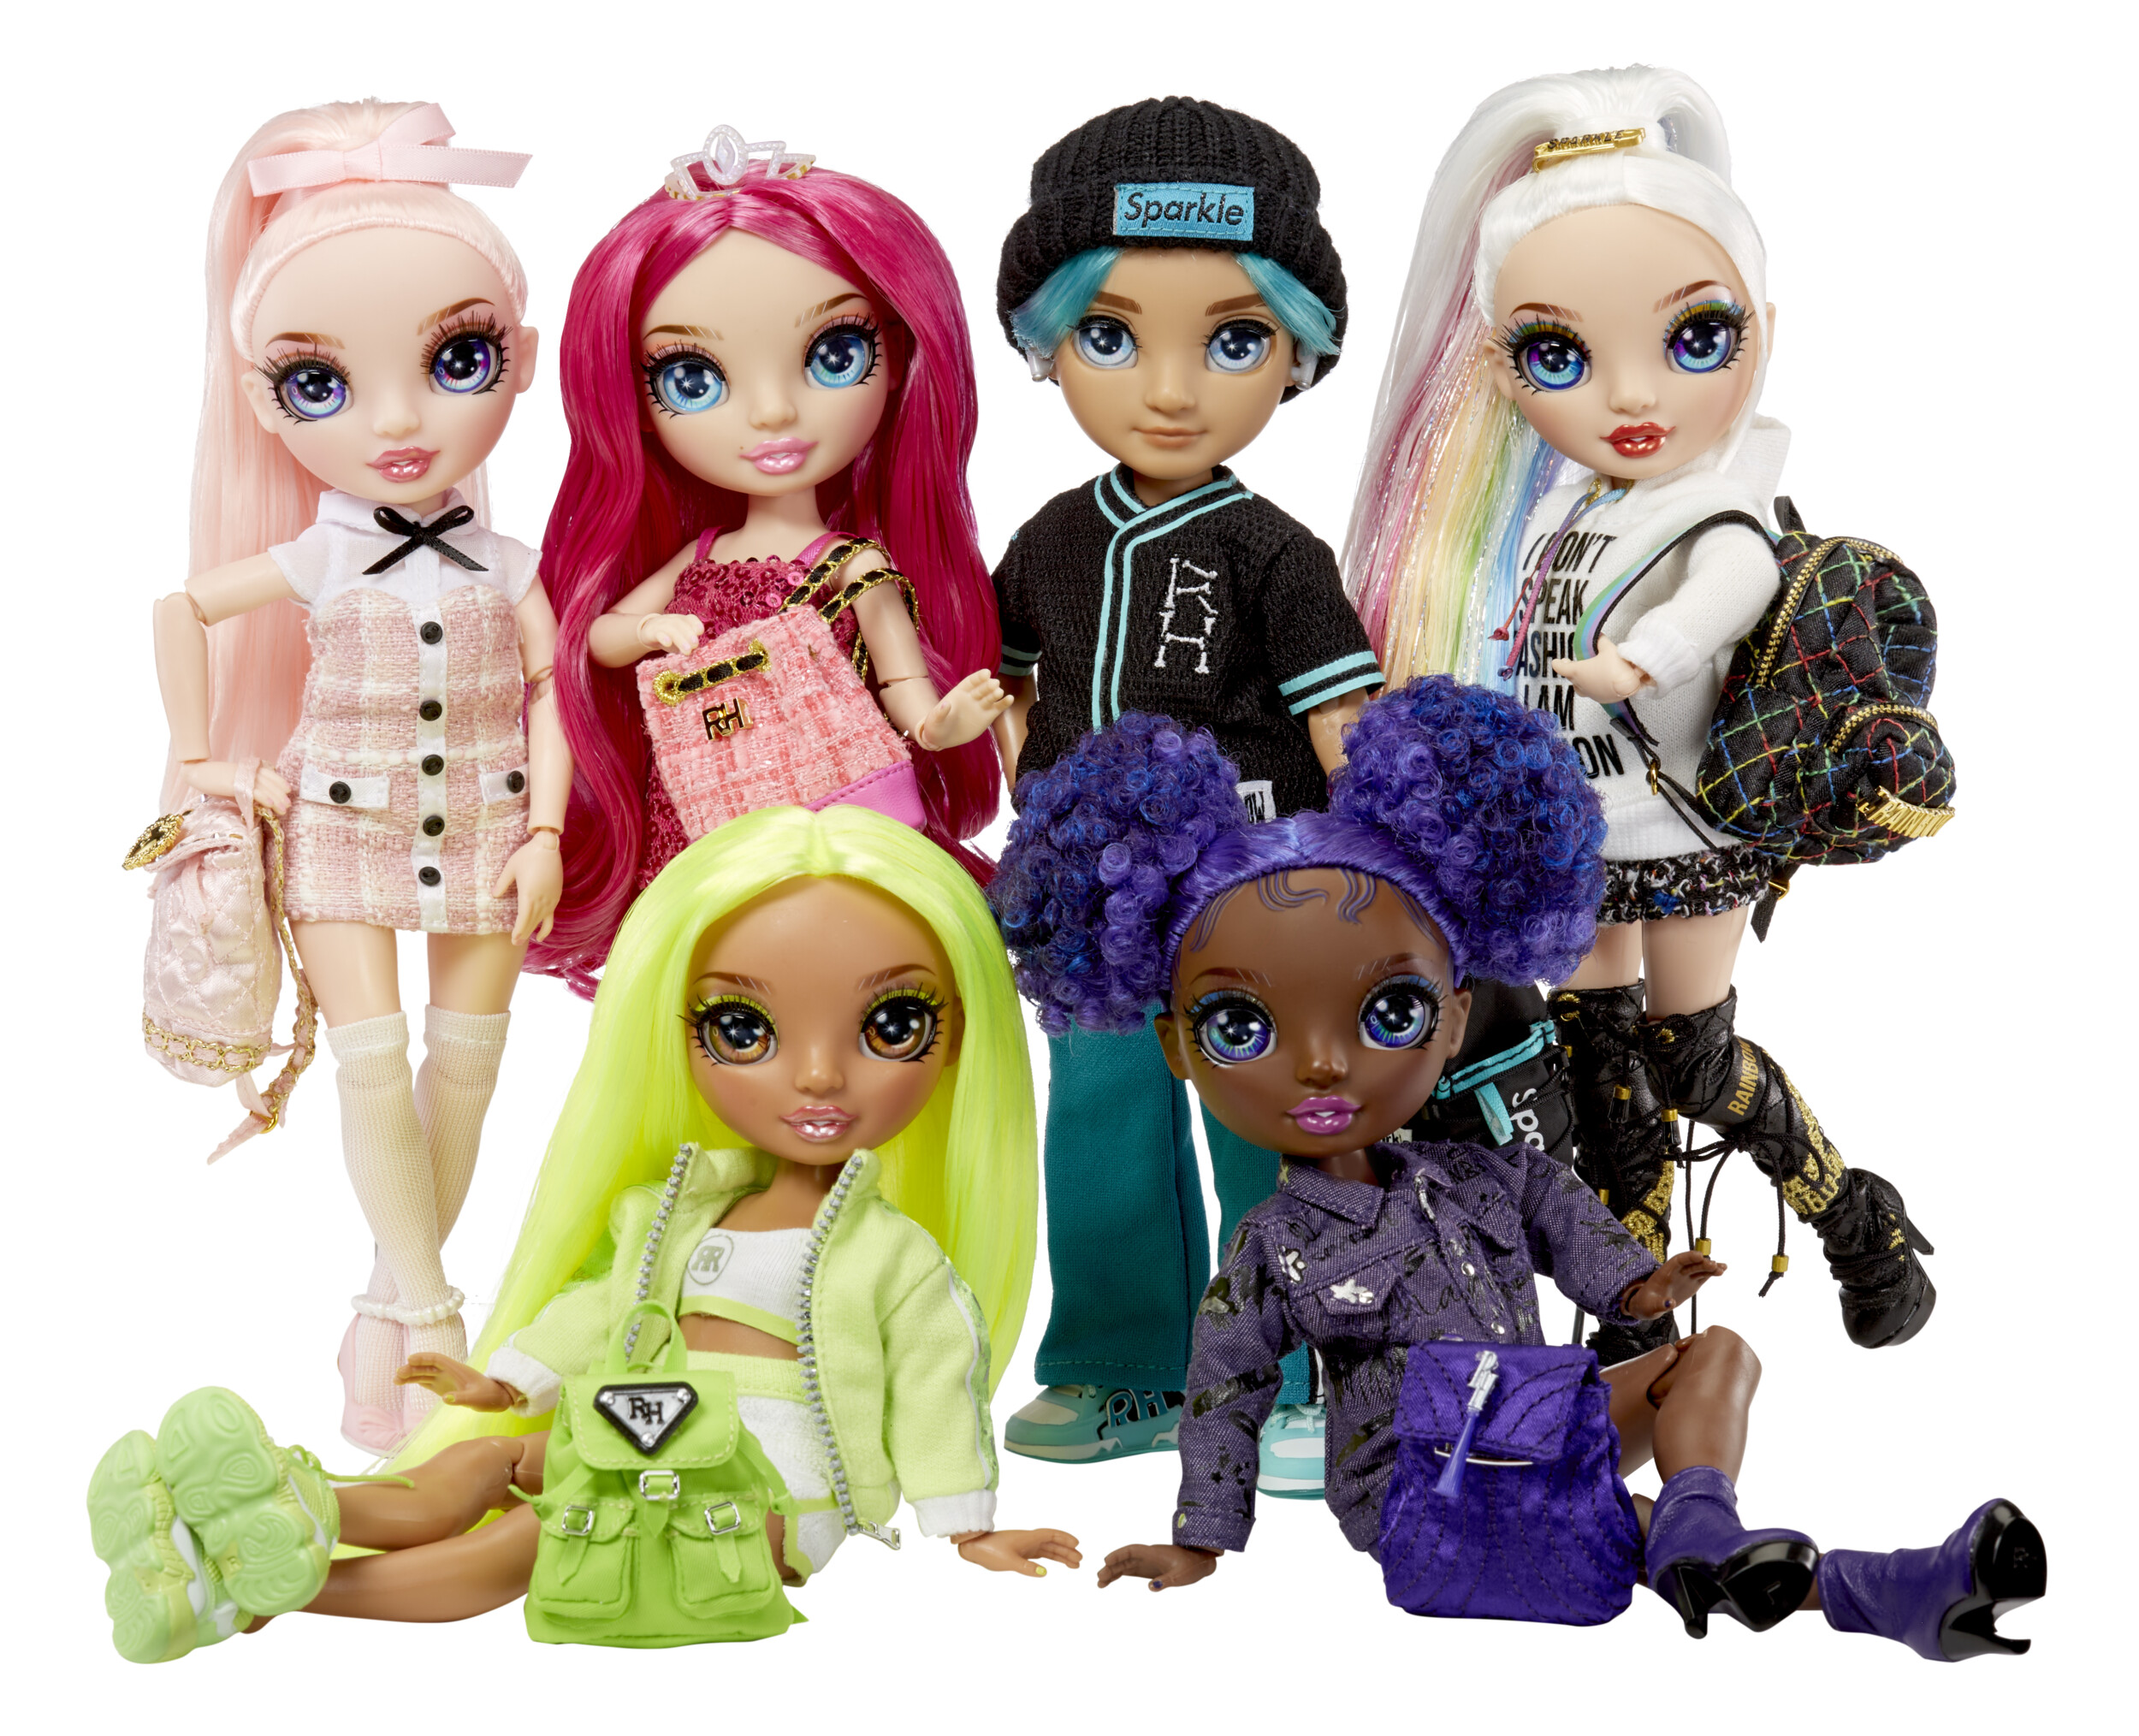 New Rainbow High & Shadow High dolls! : r/Dolls